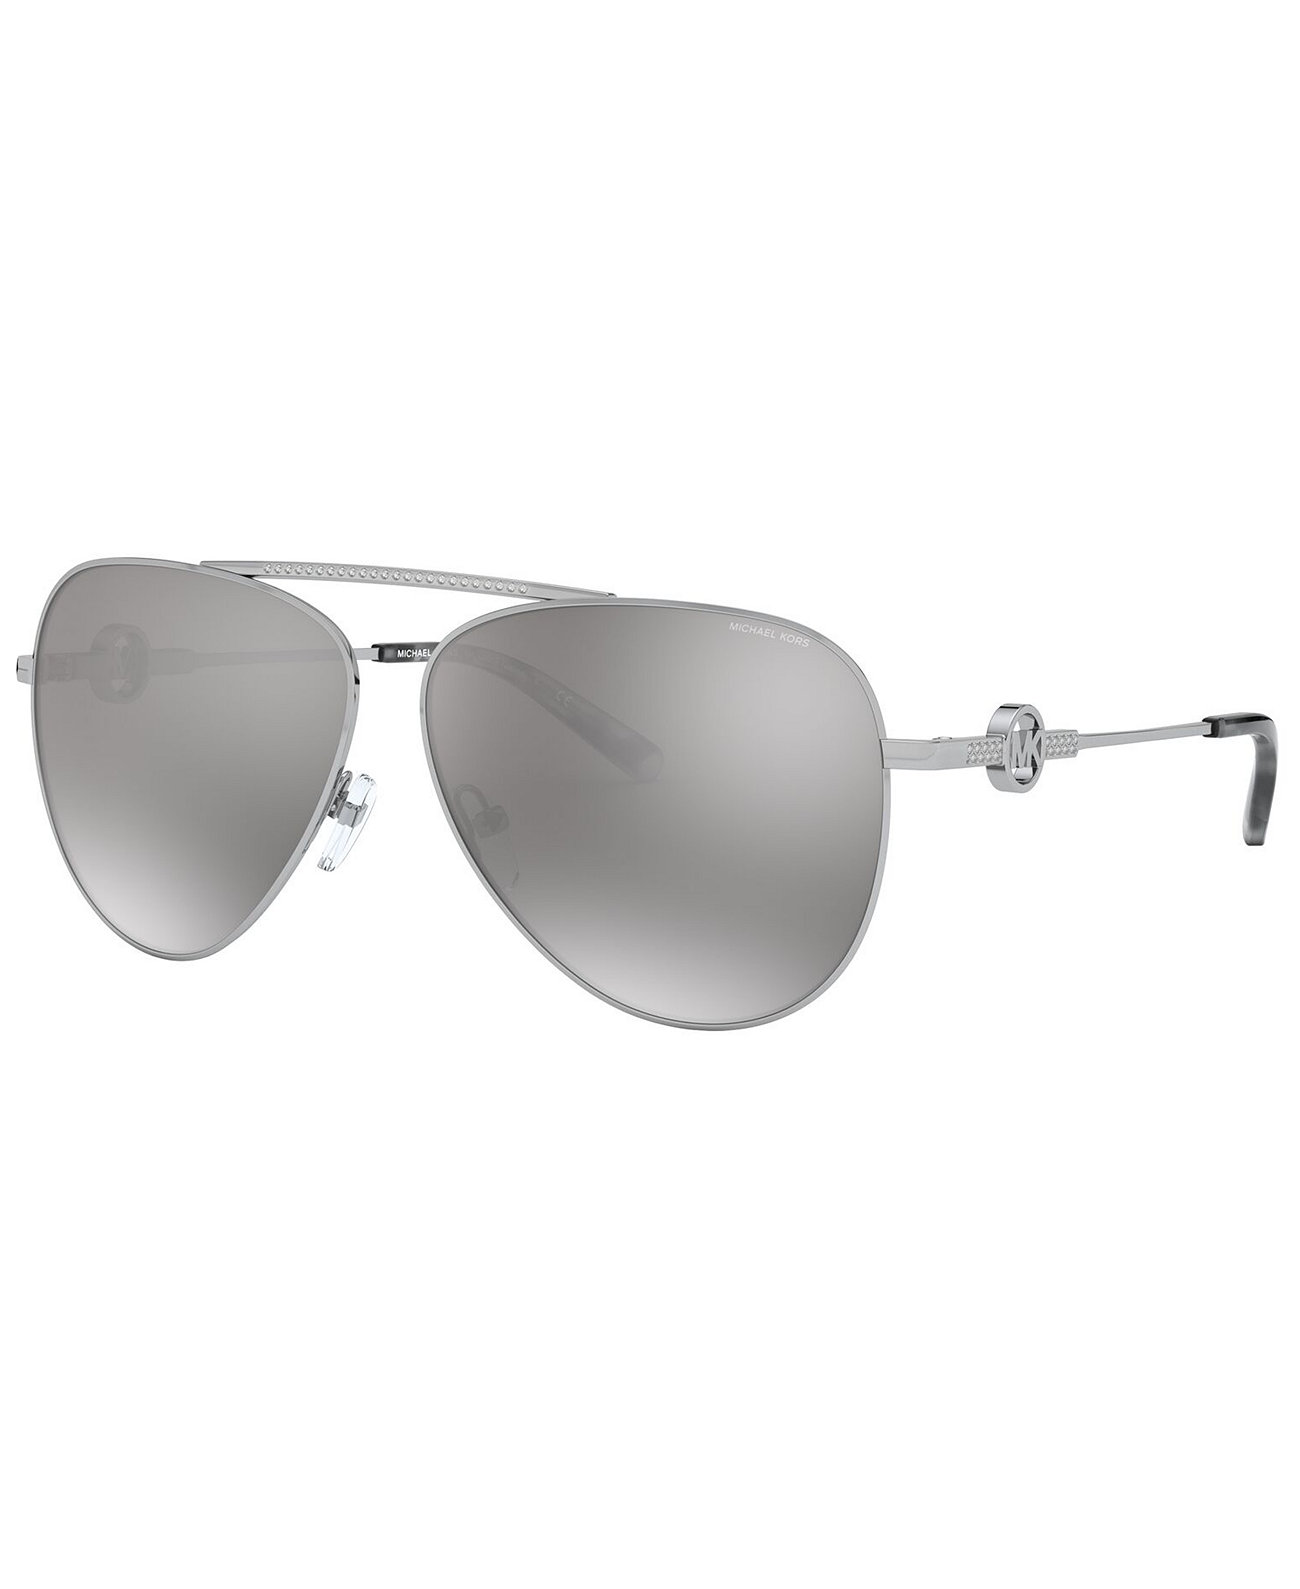 Женские солнцезащитные очки Salina, MK1066B Michael Kors